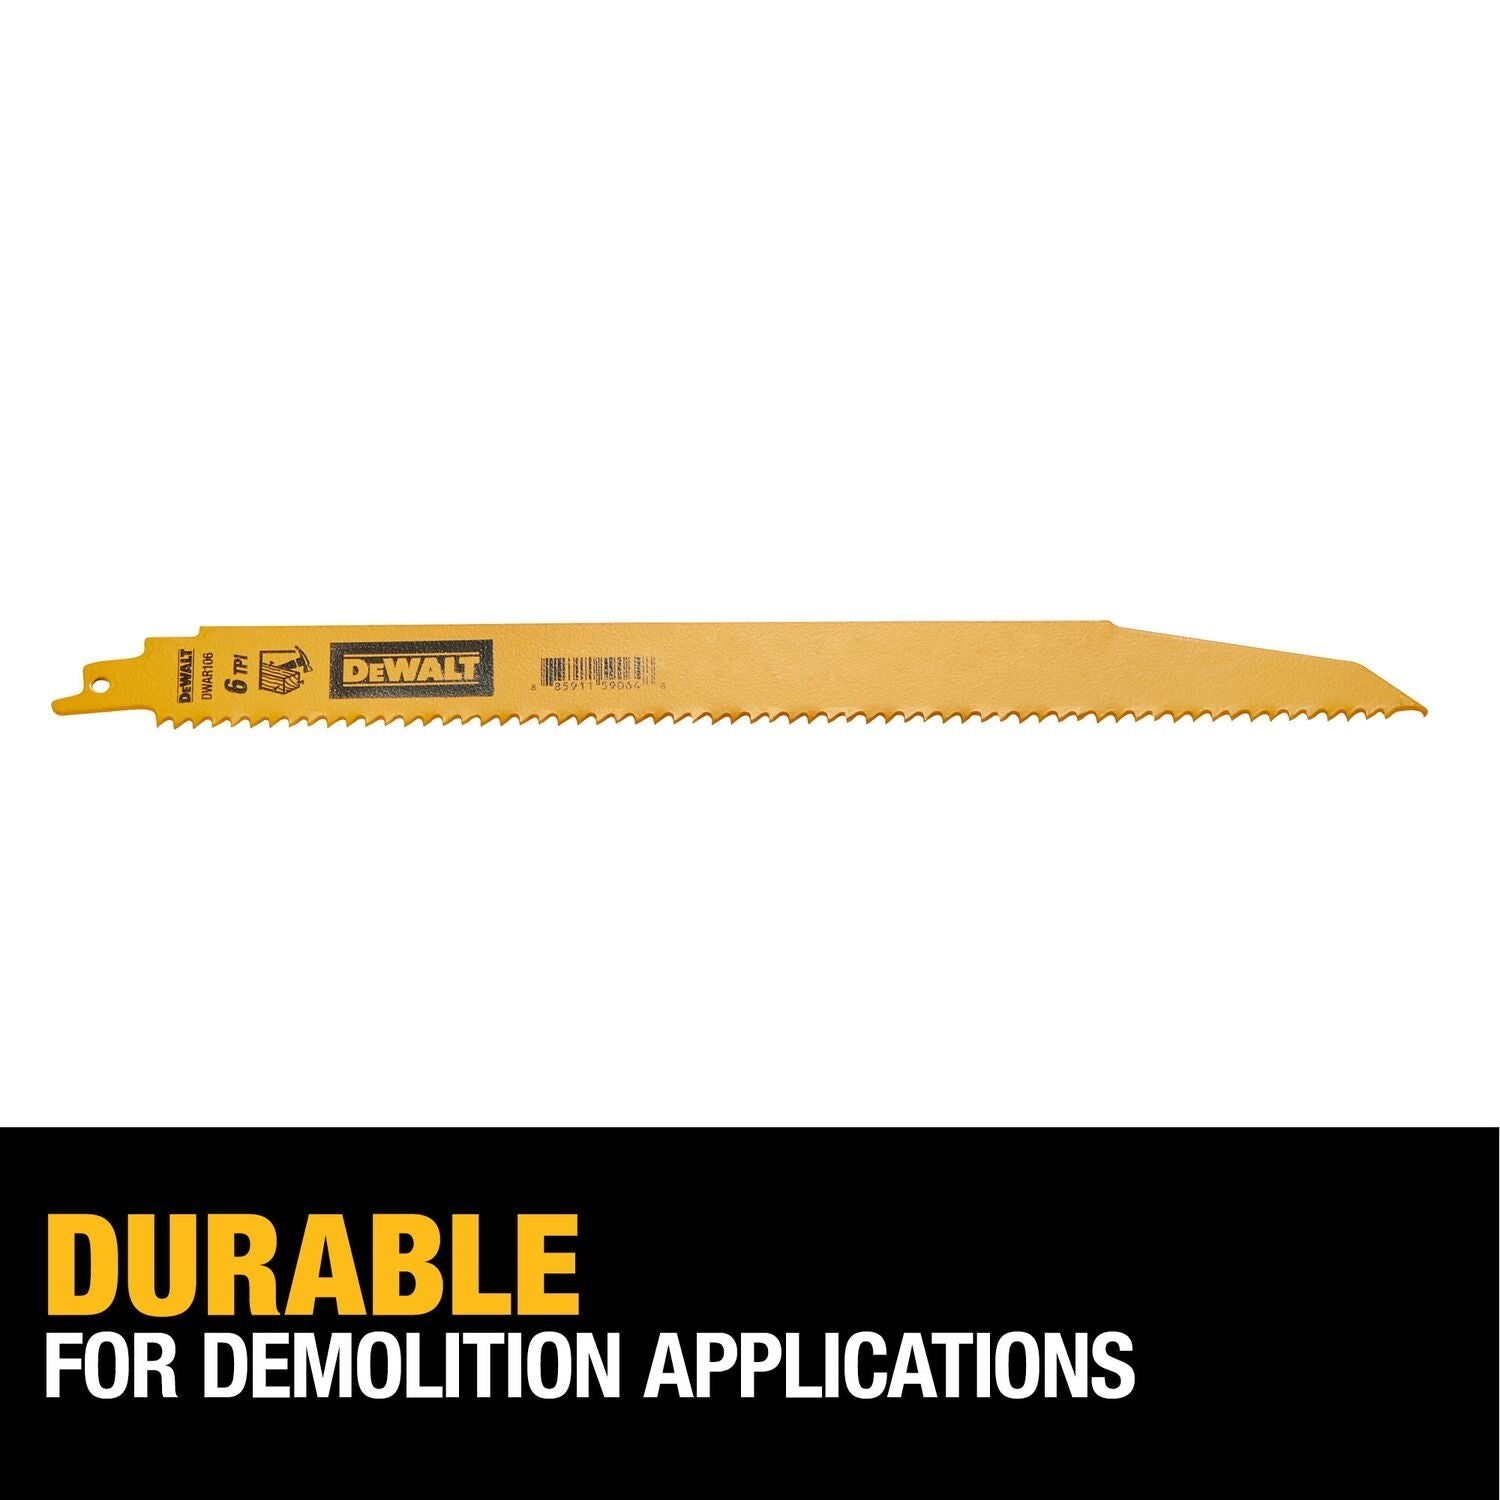 DeWALT - DWAR106 - 5-Pack 12-in 6-TPI Demolition Reciprocating Saw Blade